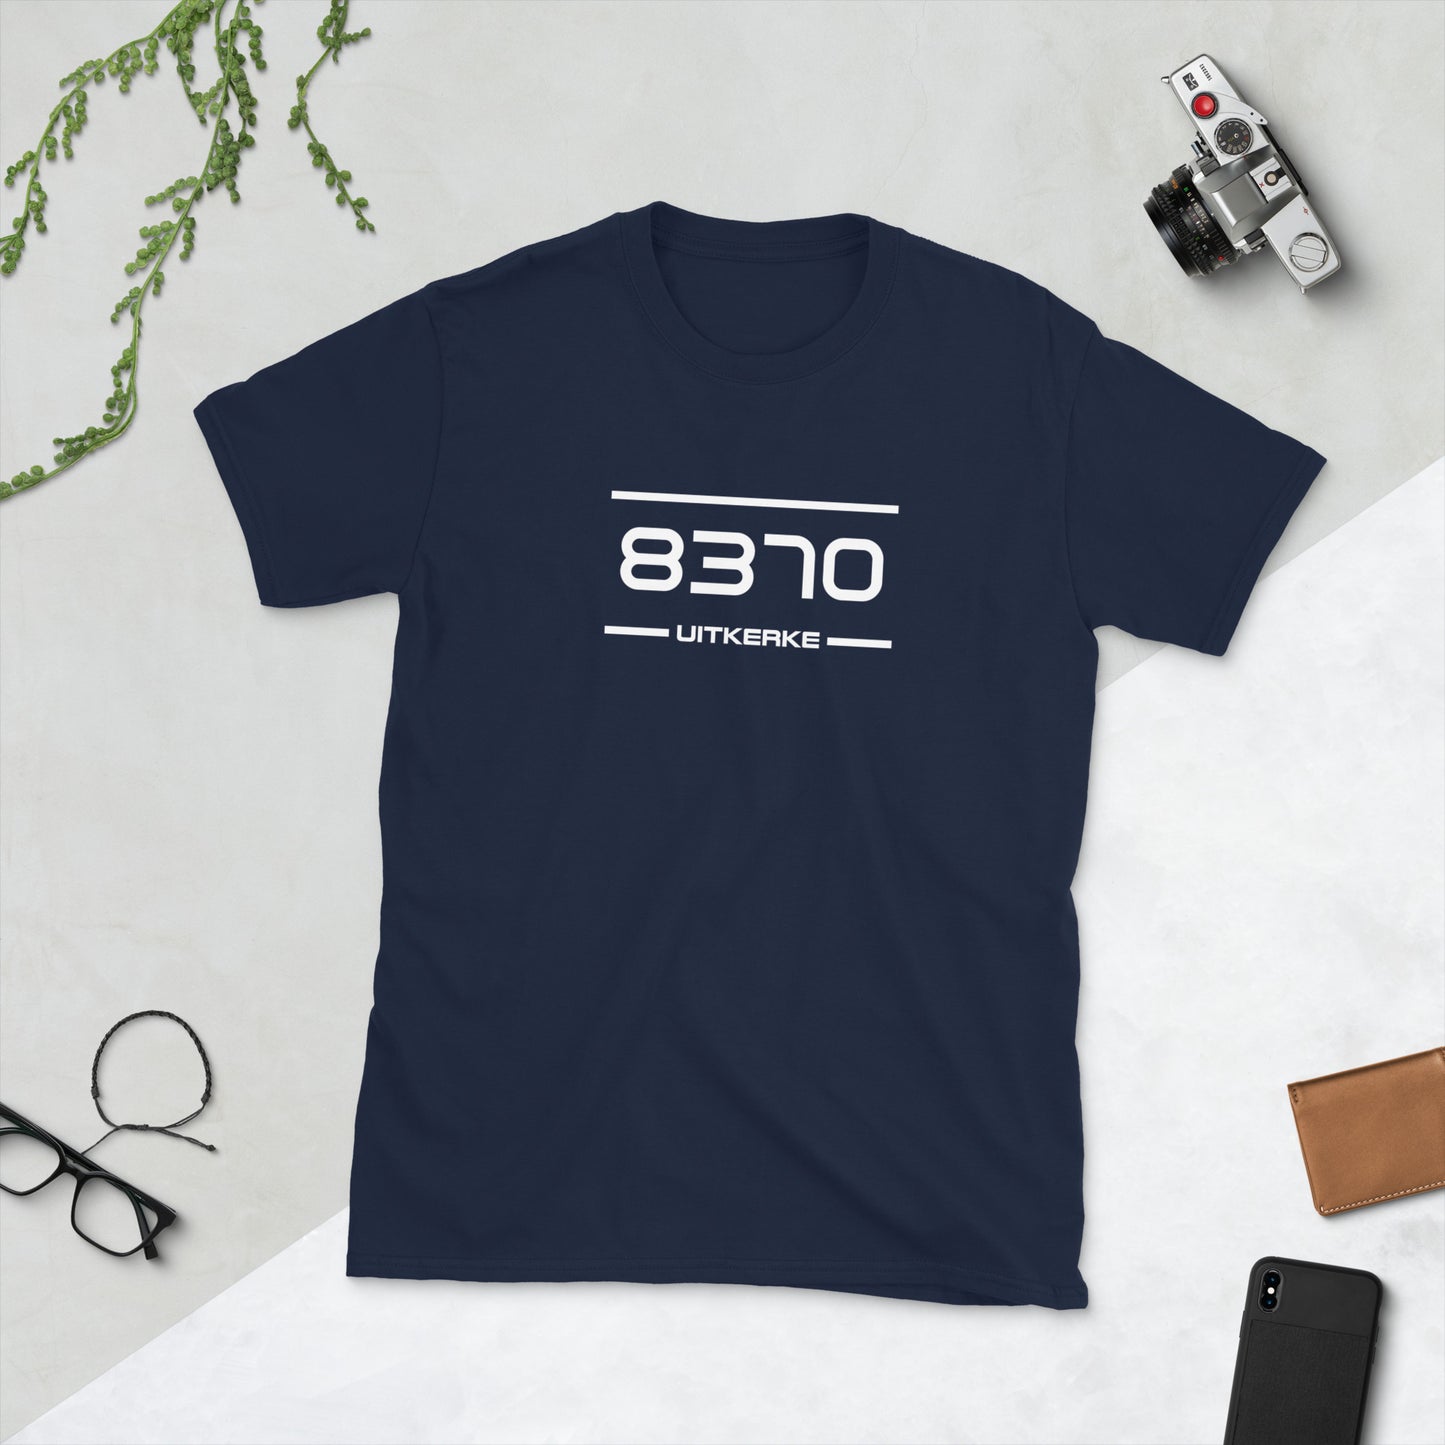 Tshirt - 8370 - Uitkerke